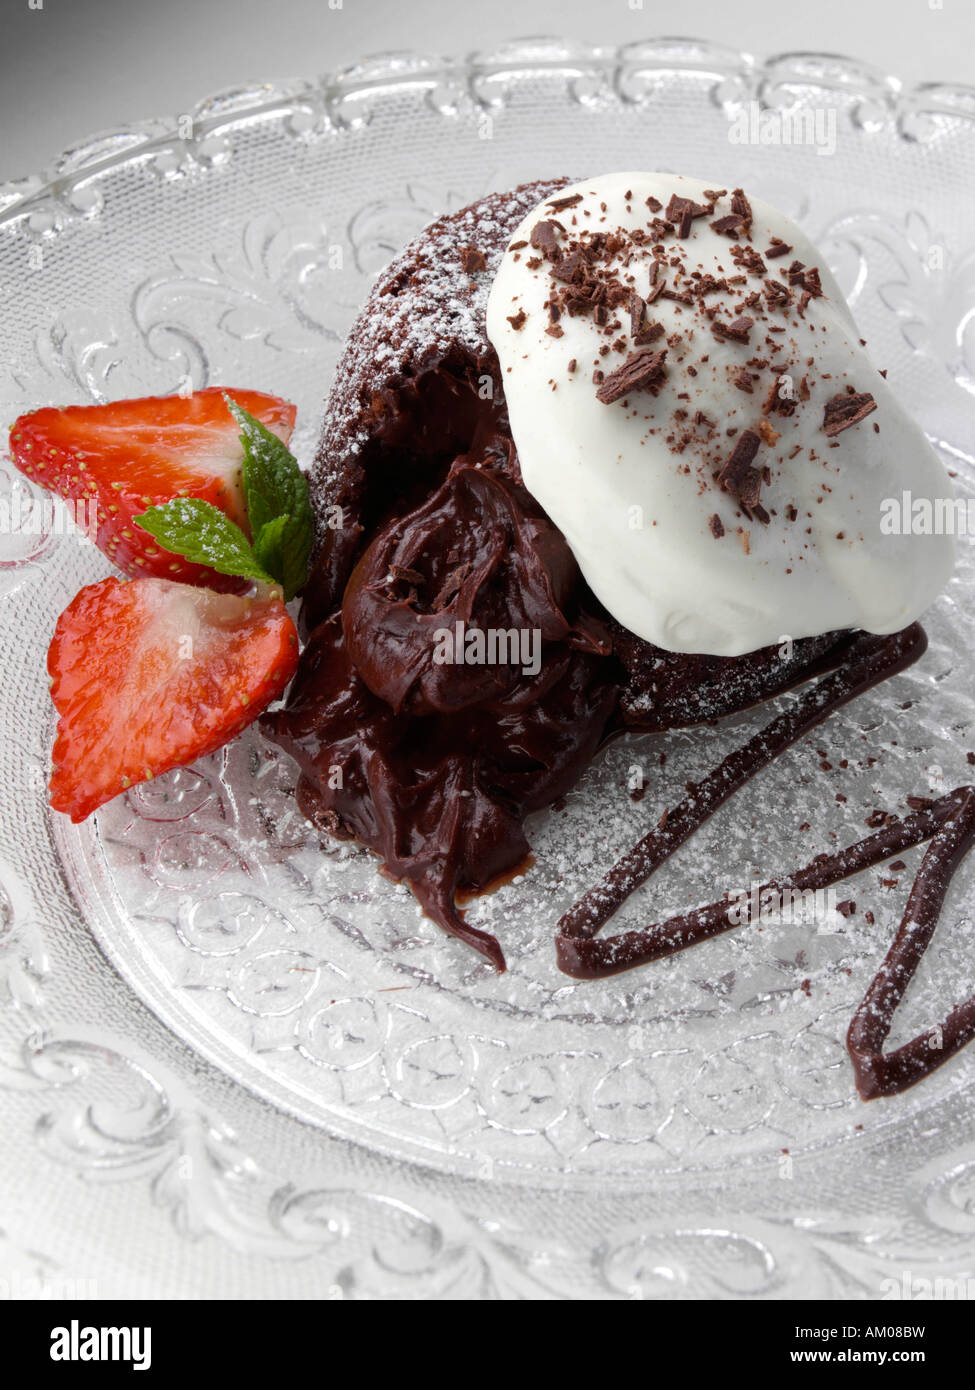 Schokoladen-Fondant-Pudding mit Erdbeeren und Sahne redaktionelle Essen Stockfoto